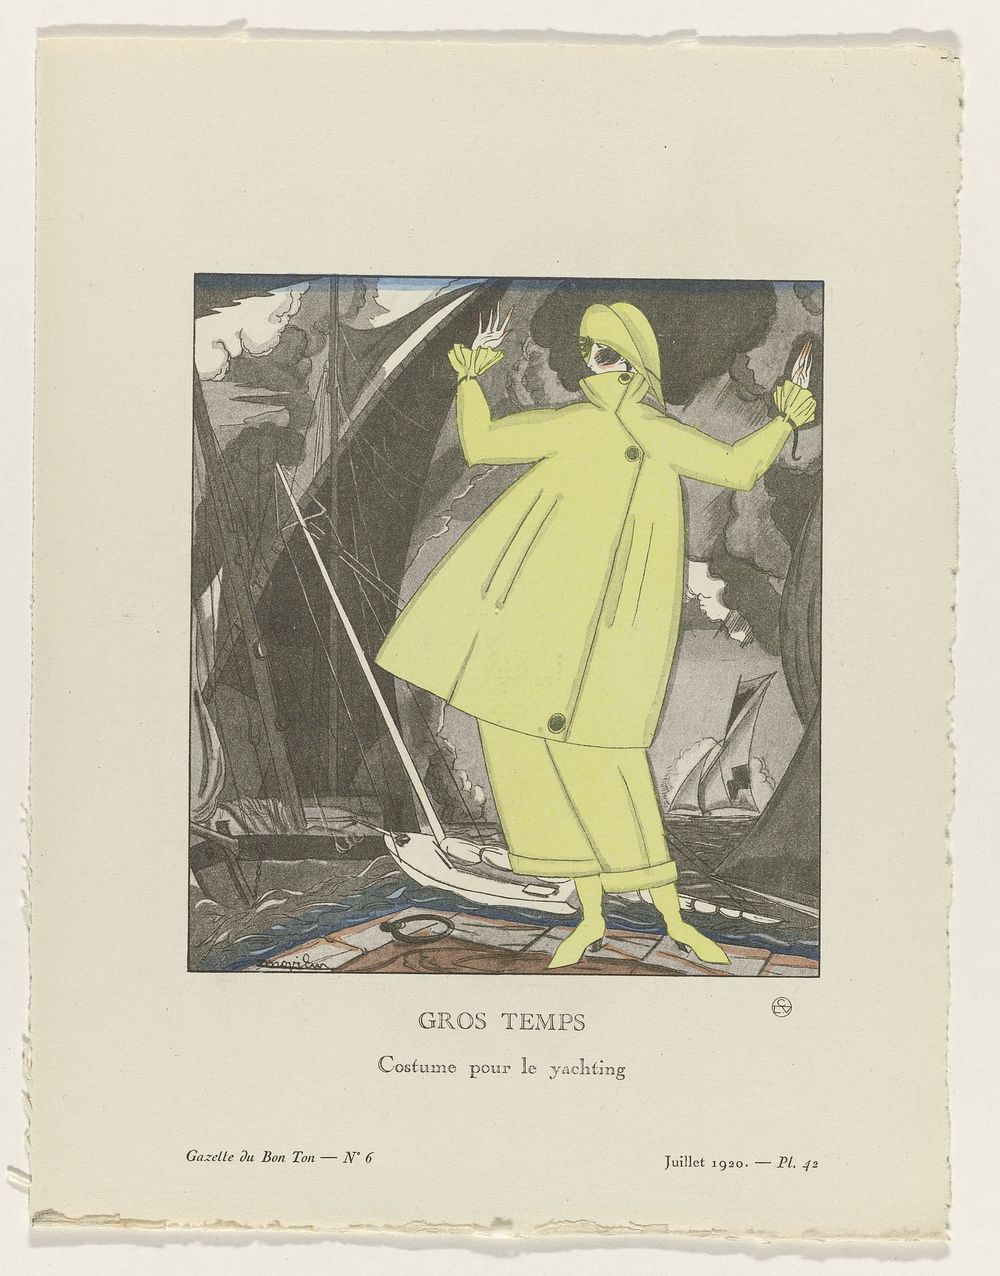 Gazette du Bon Ton. Art – Modes & Frivolités: Artists (1920) by José Zinoview, anonymous, Lucien Vogel, The Field Press…